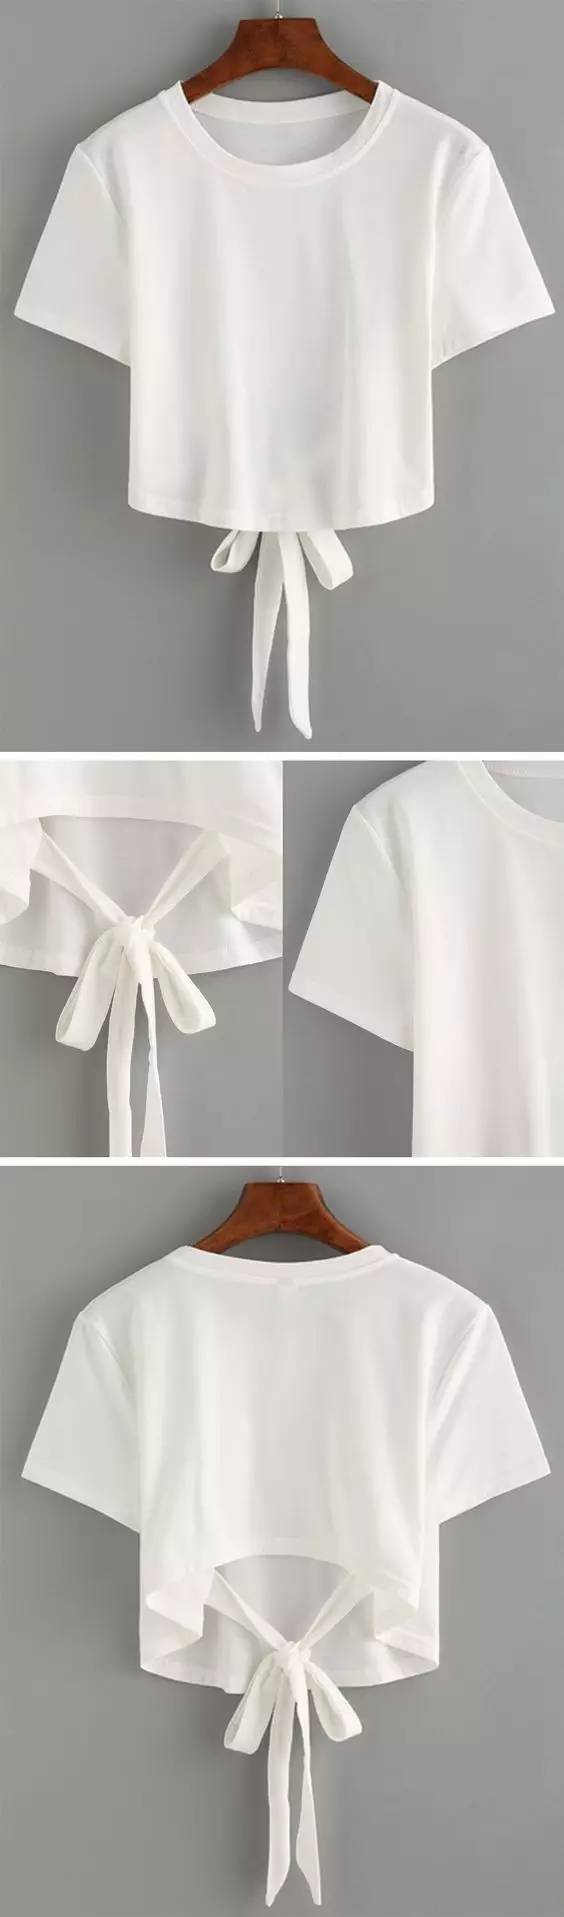 一件白t恤的30种"穿"法,承包你整个夏天的时髦!